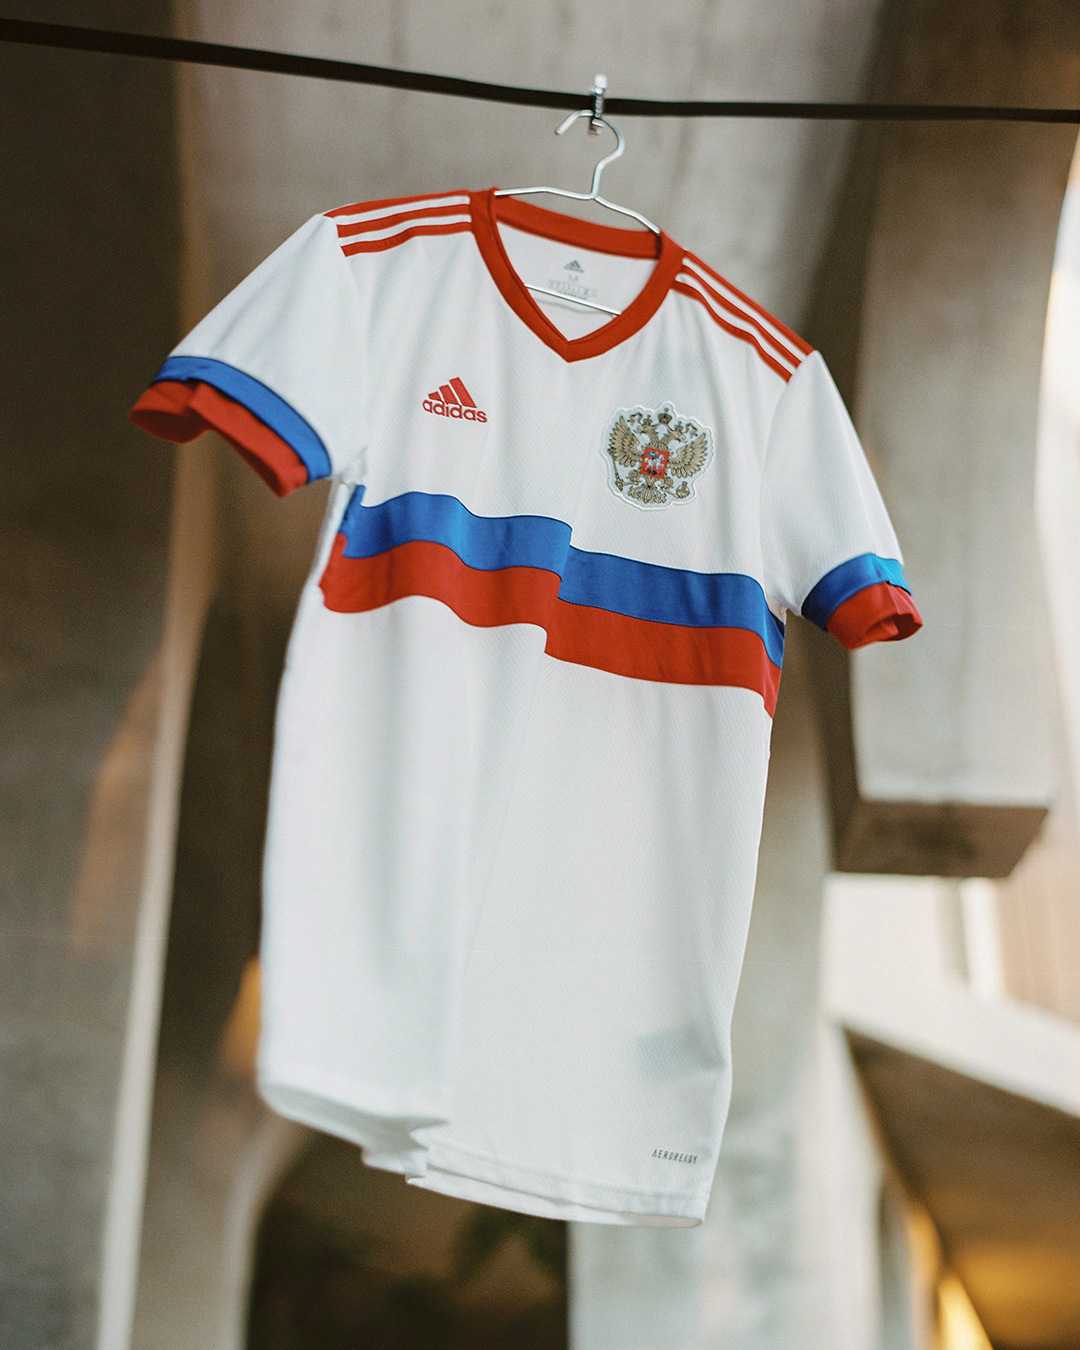 Формы сборных по футболу на евро-2020: черная германия, россия с флагом на груди, мощные концепты от nike